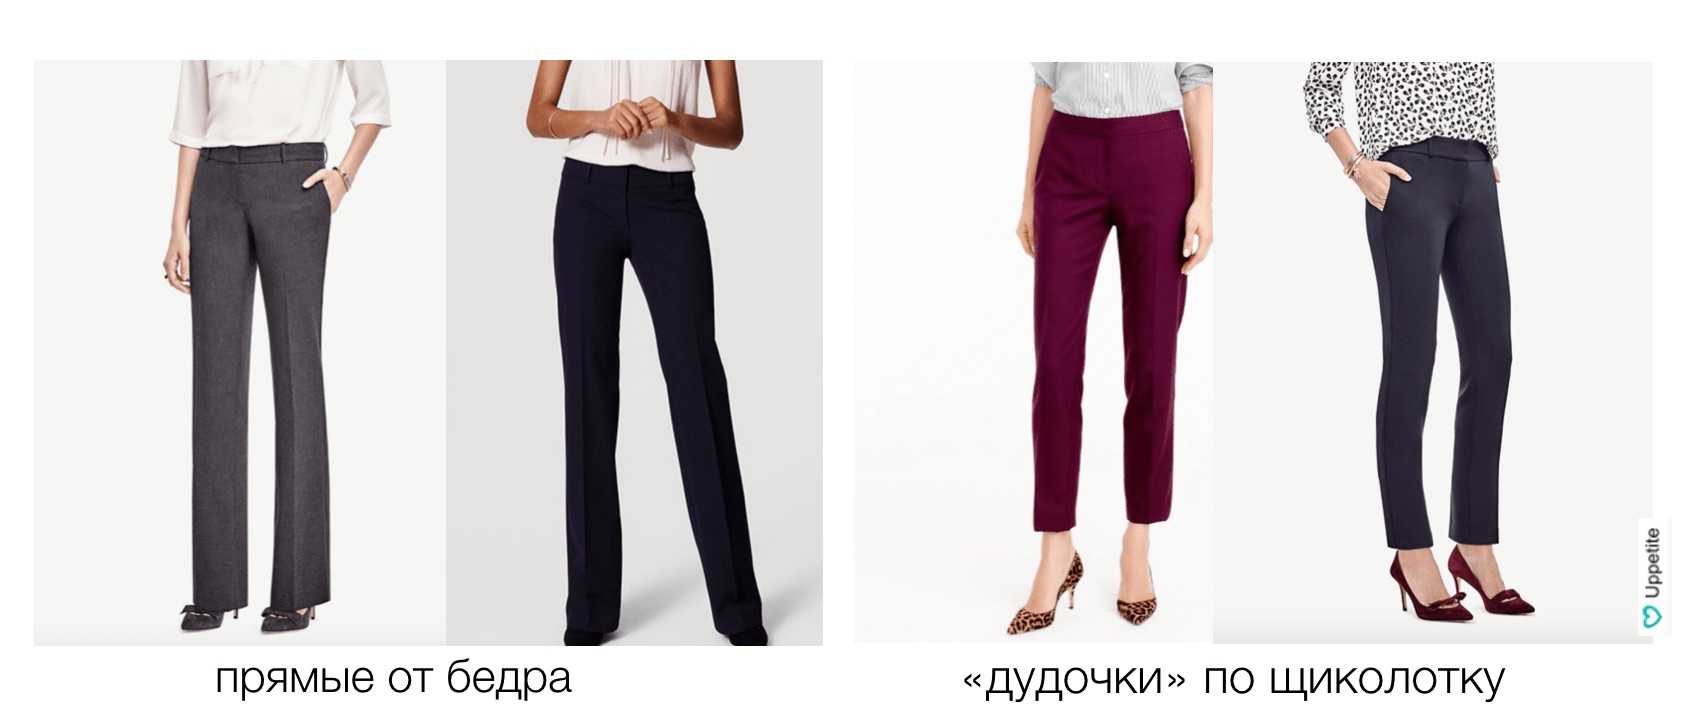 Styl kalhot pro nízké ženy: jak si vybrat a kde koupit?